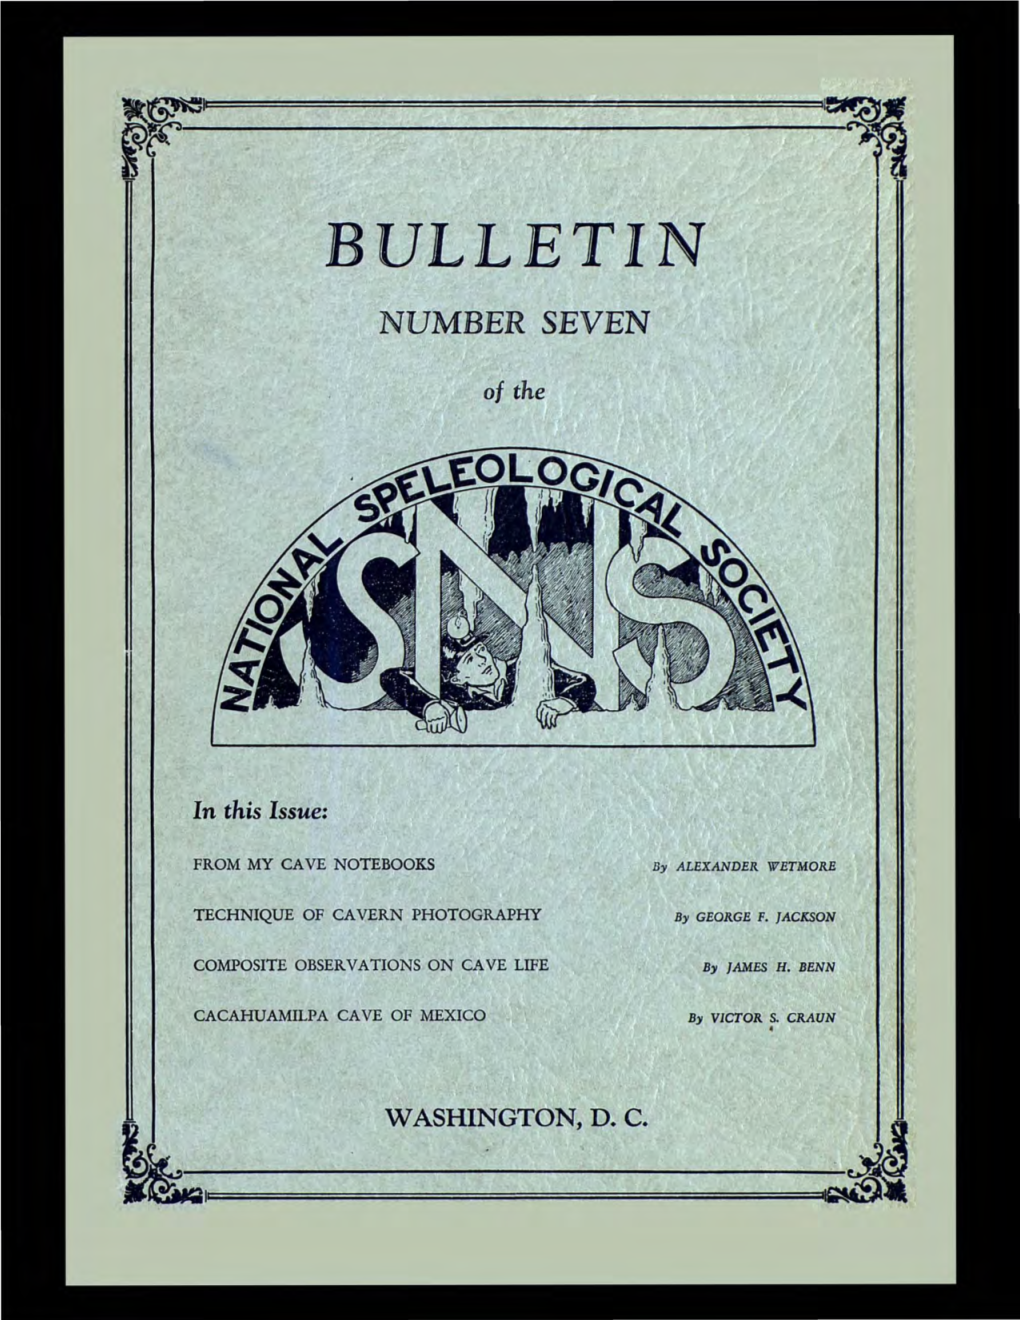 Bulletin Number Seven